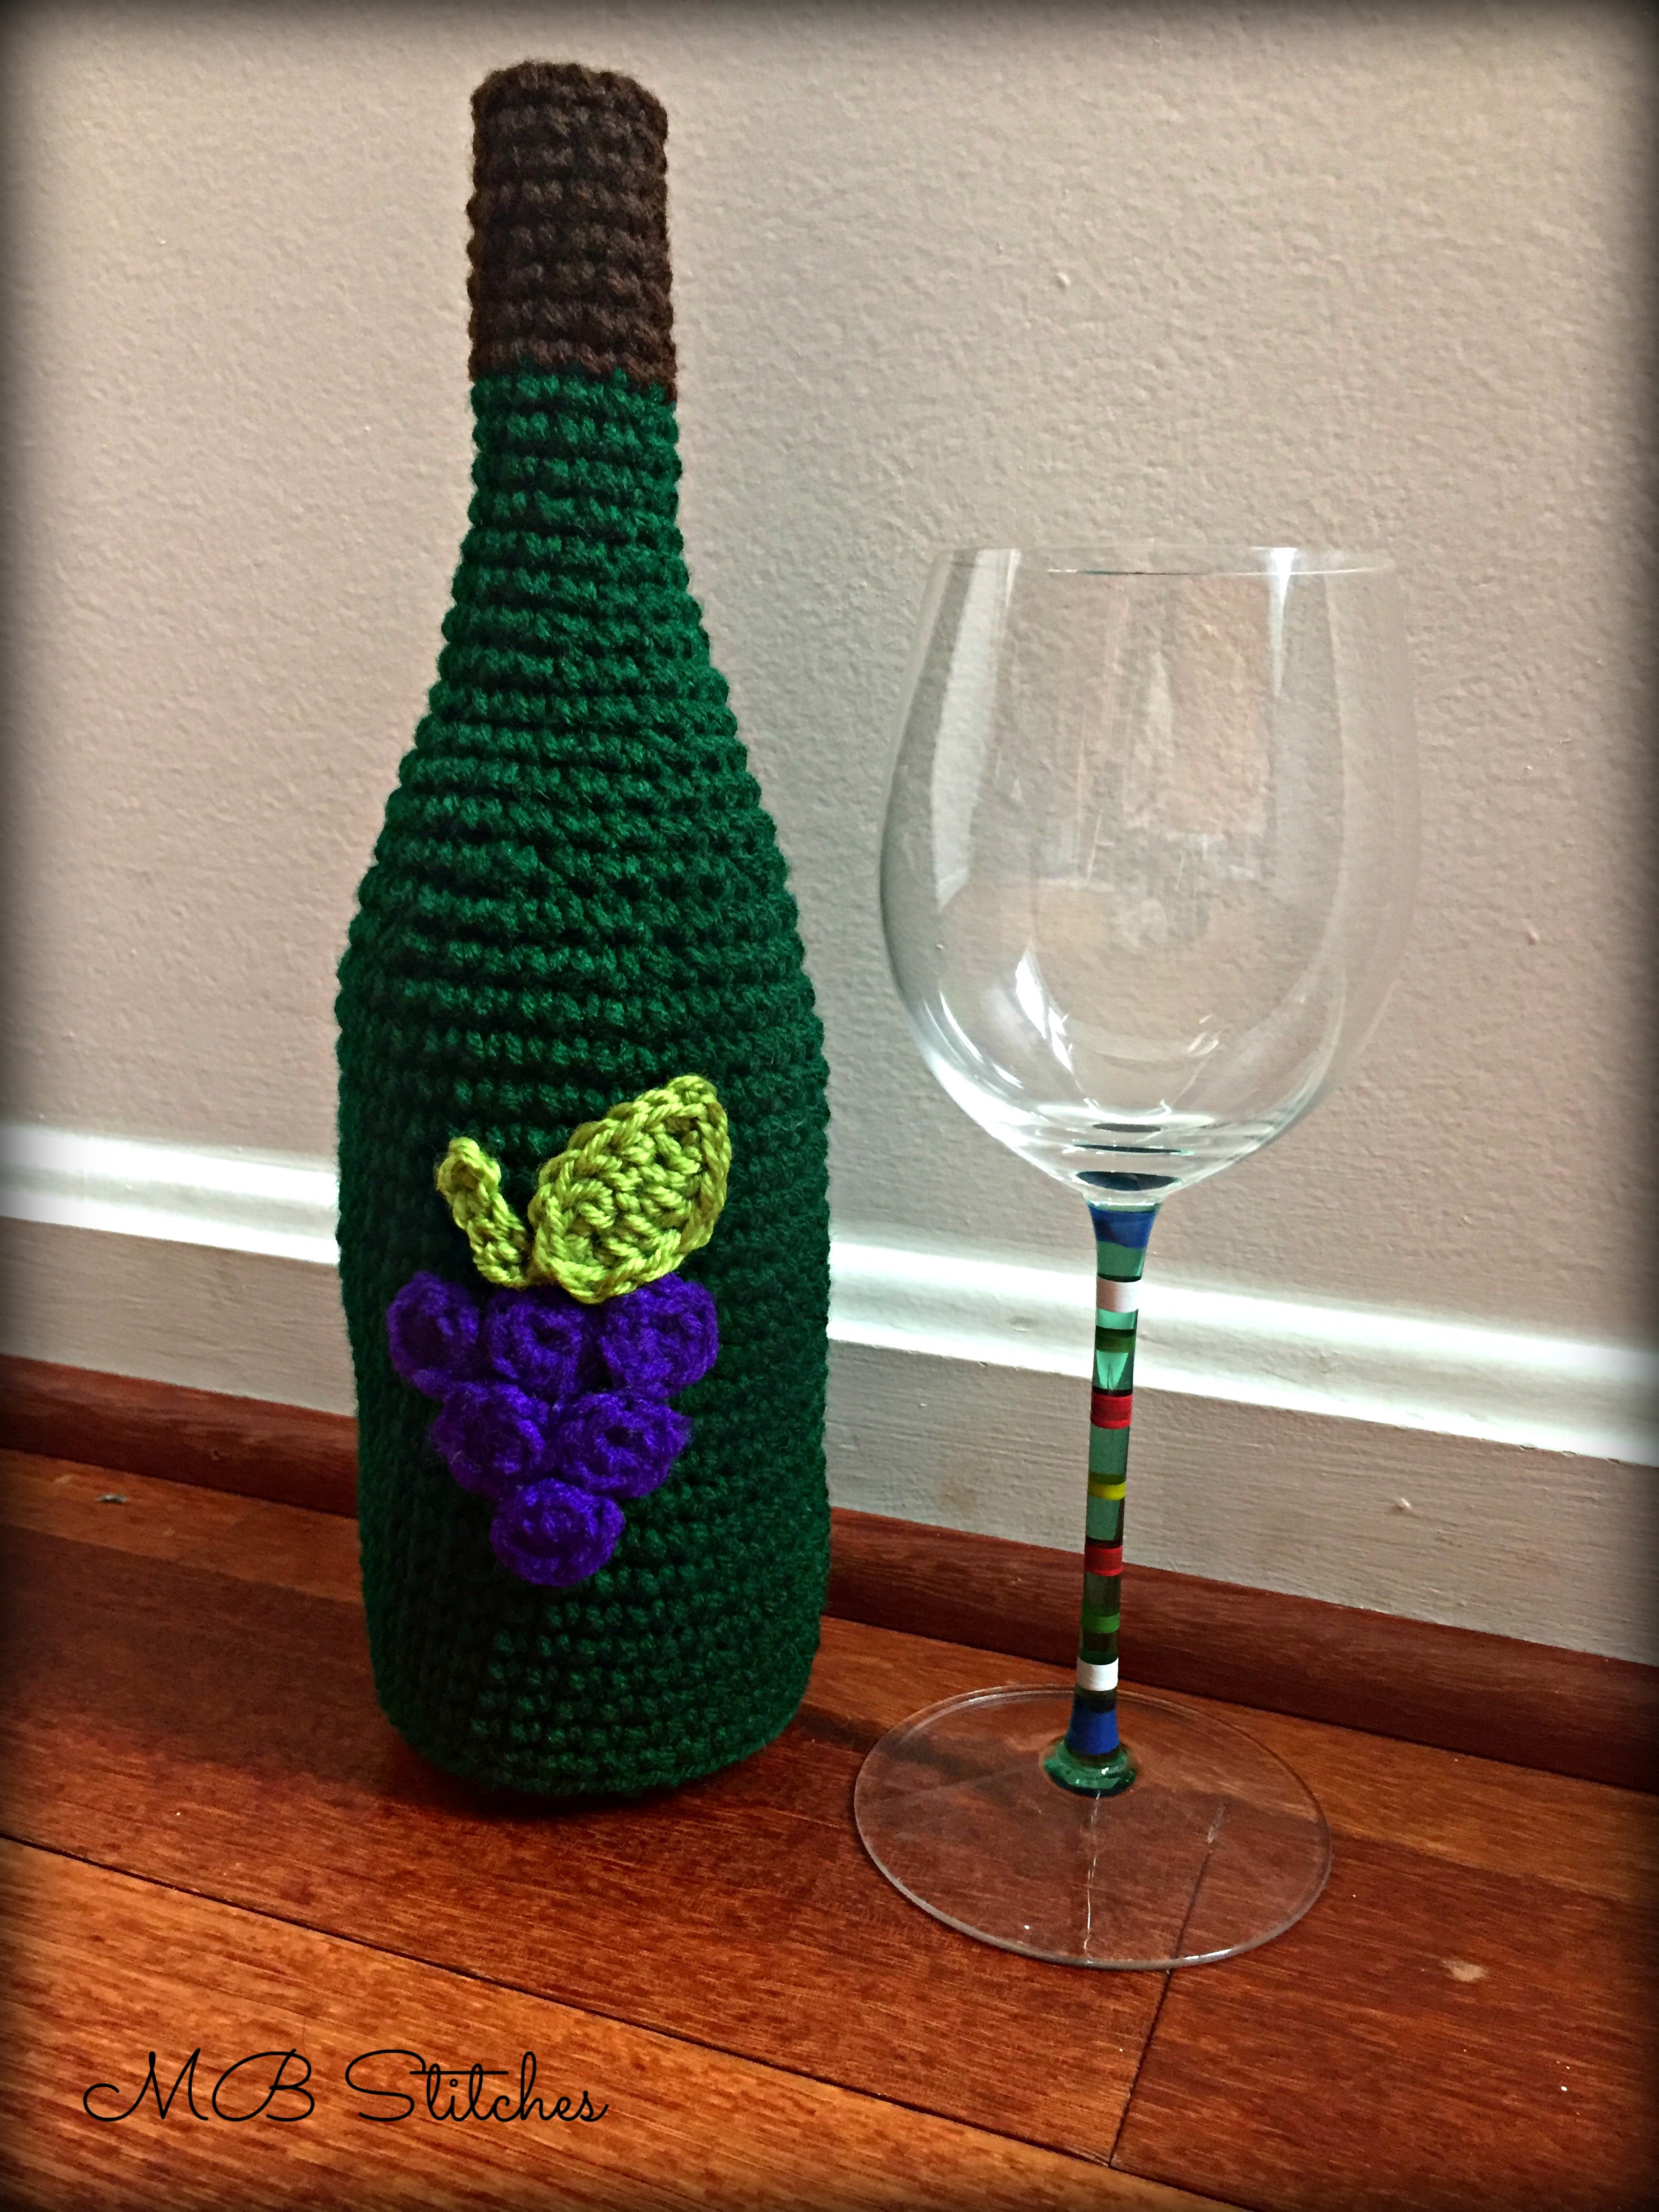 Clover 1045/G Purple Amour Crochet Hook, Size G, 4.0mm